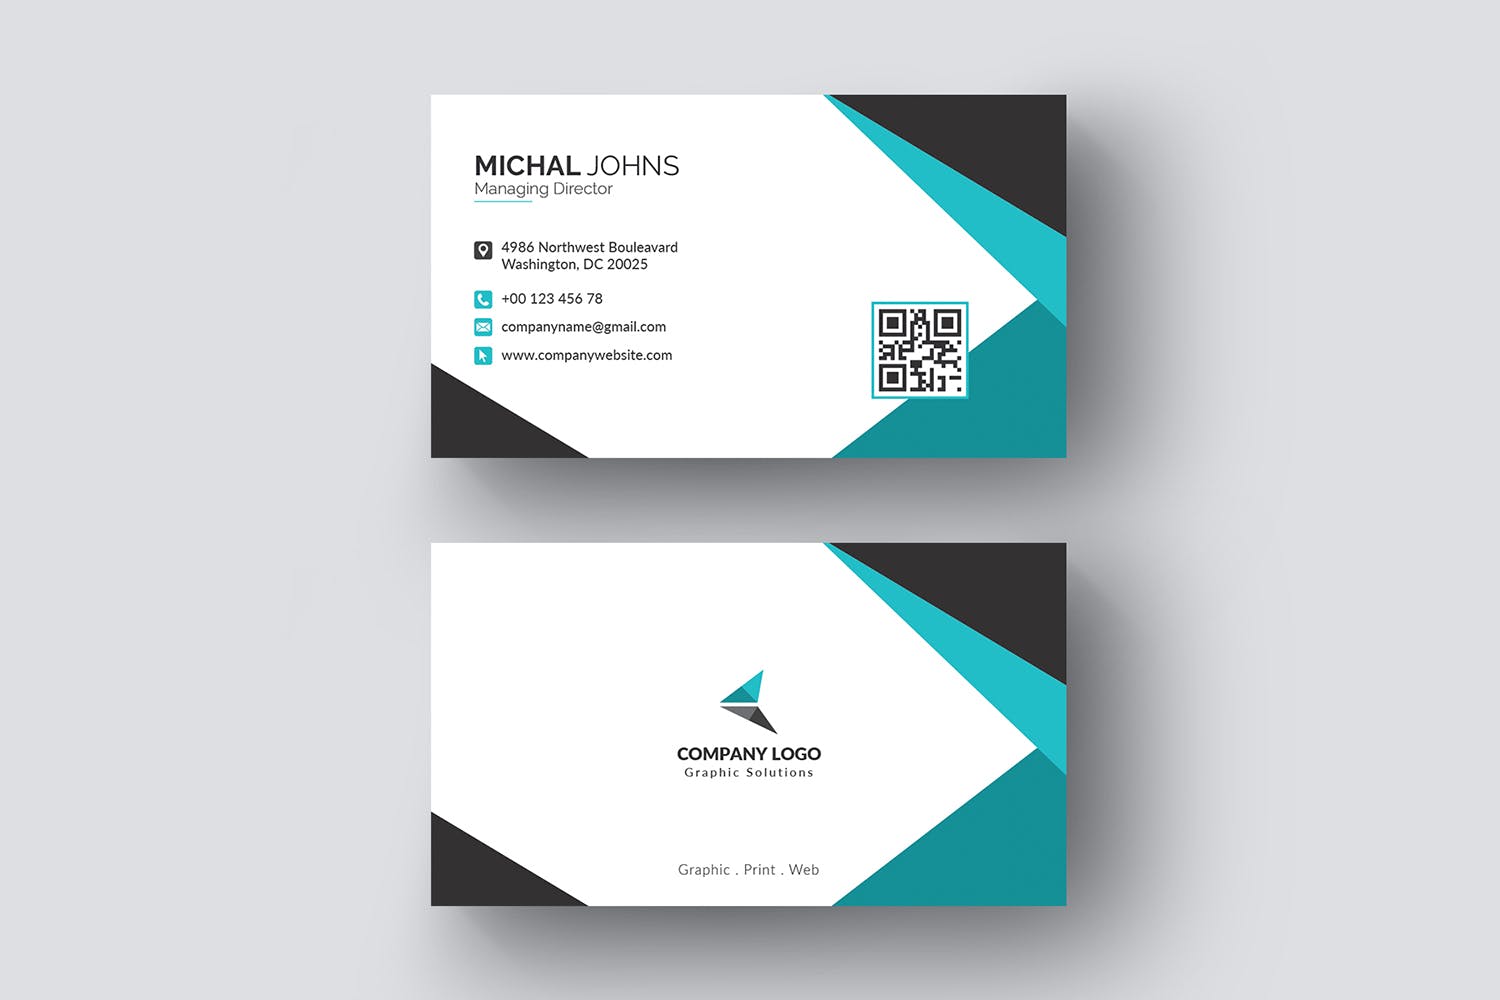 现代创意设计风格企业名片模板 Business Card插图(4)